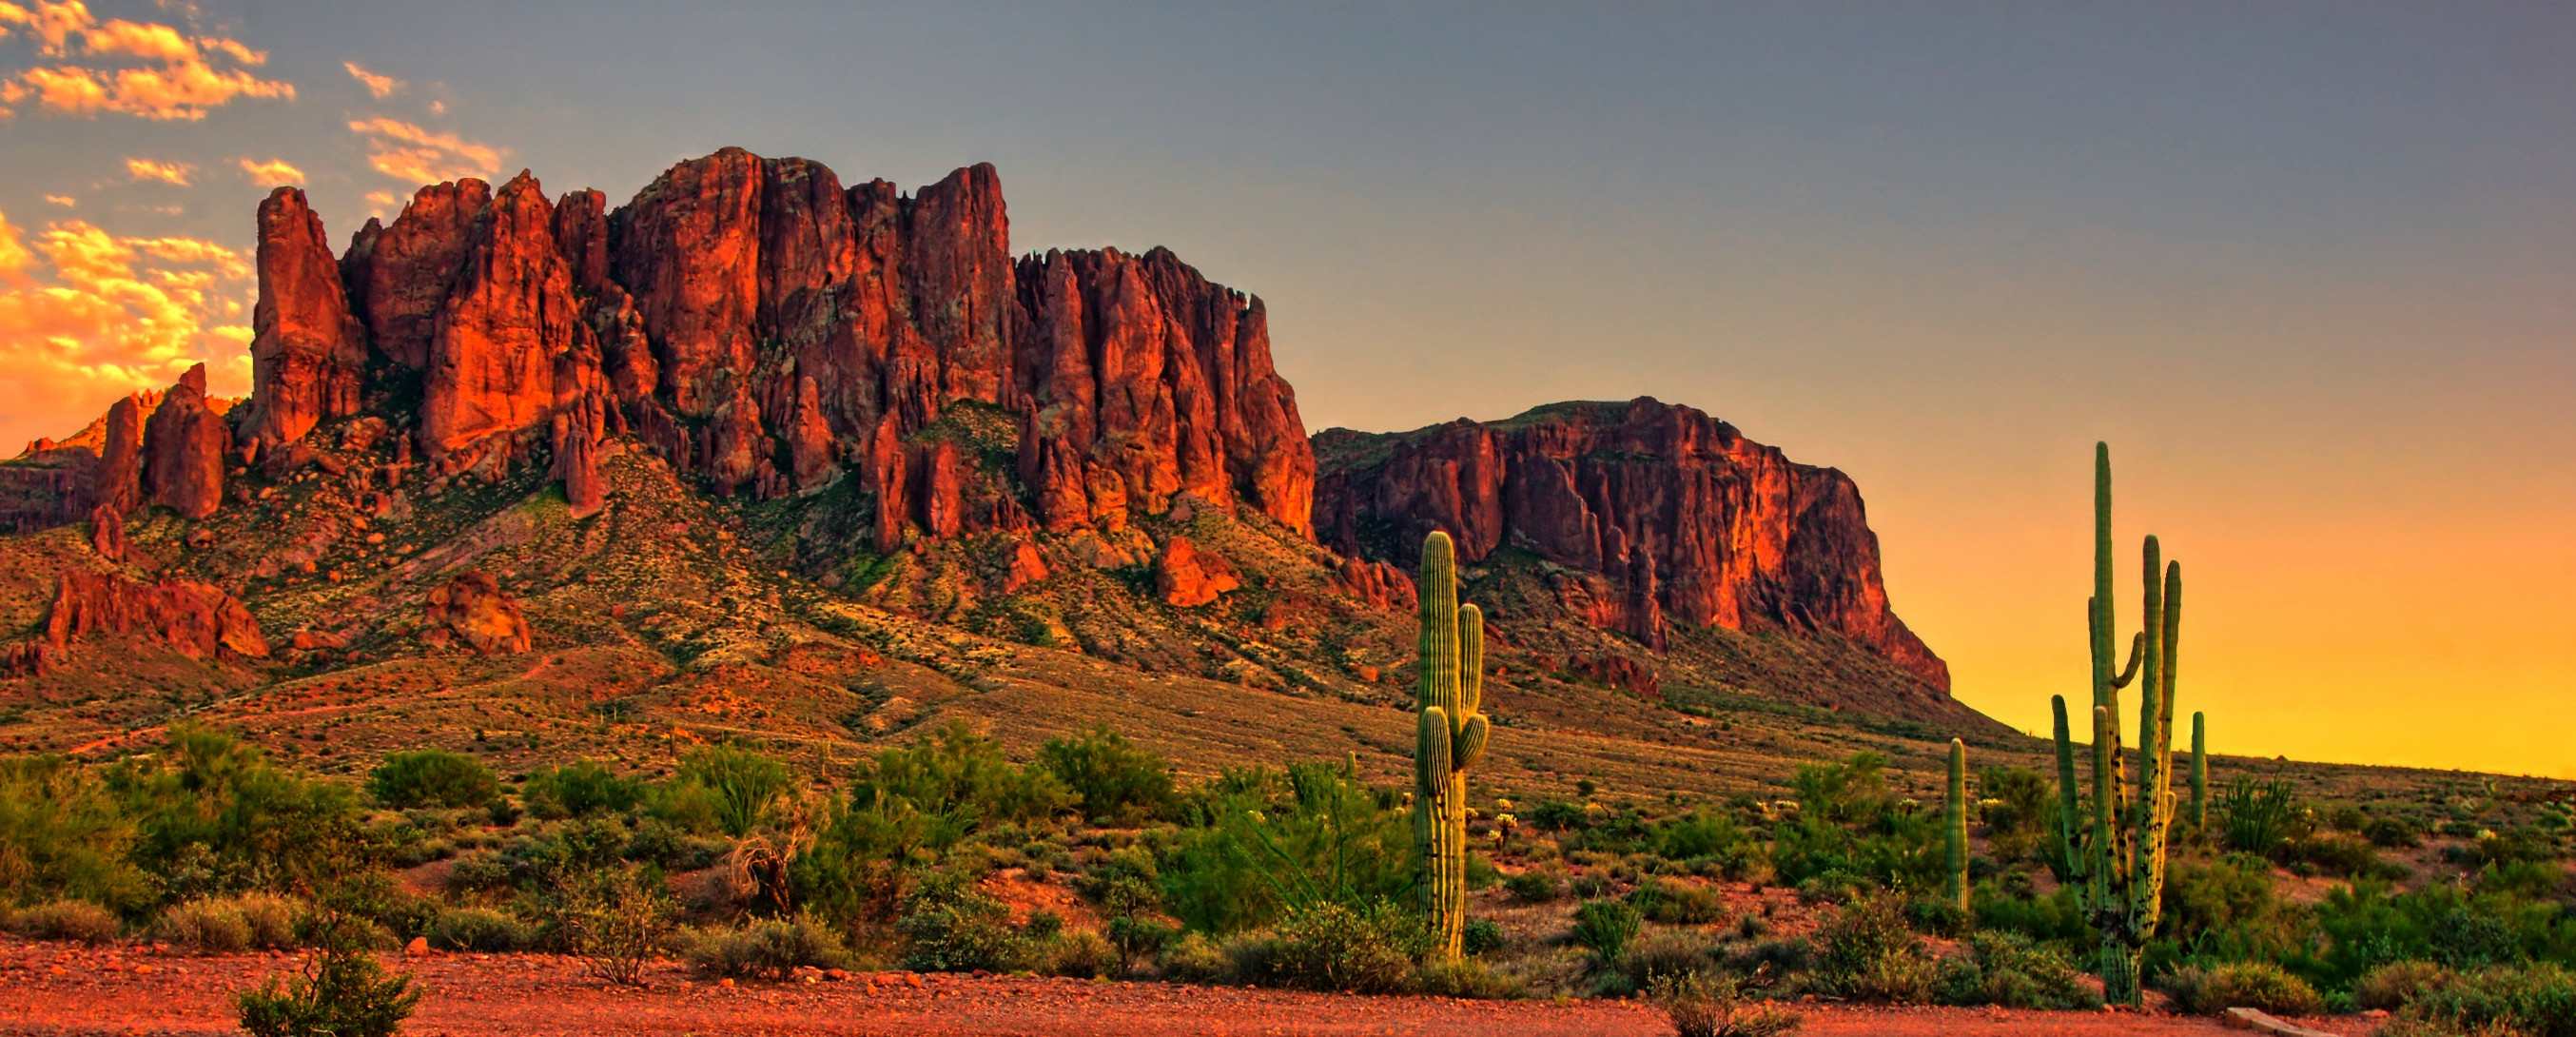 Arizona Background Image